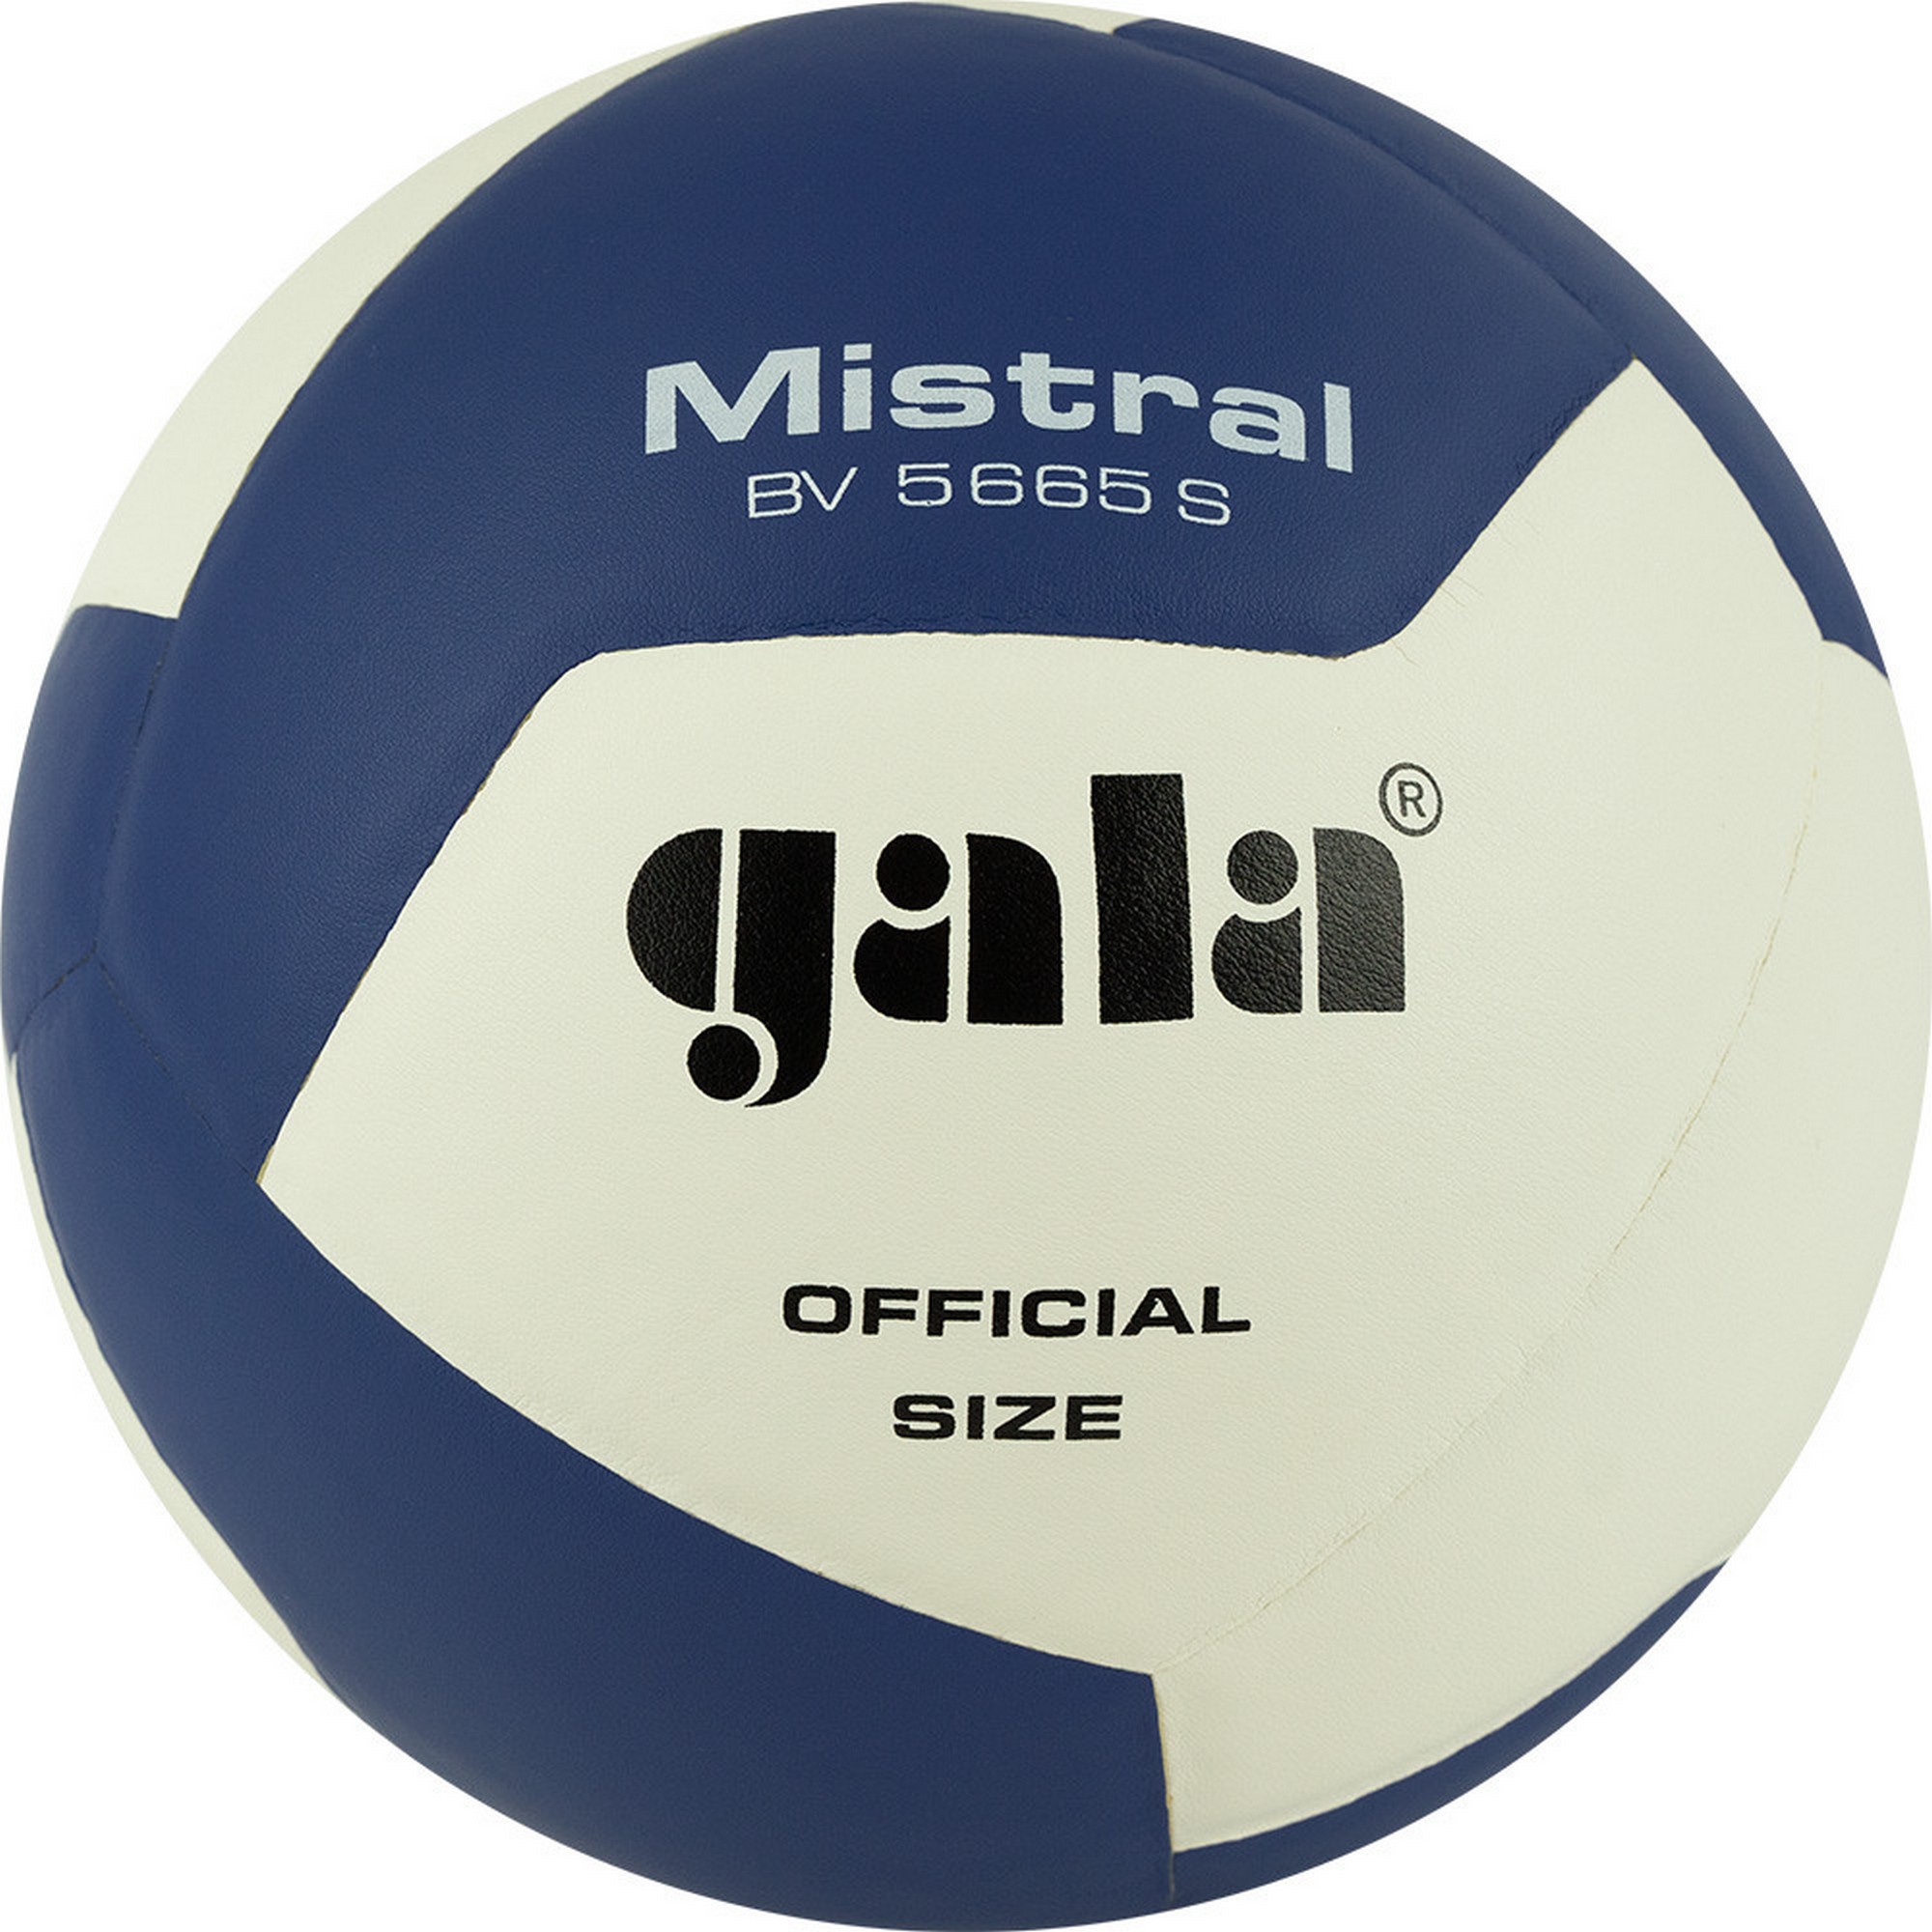 Мяч волейбольный Gala Mistral 12 BV5665S р. 5 2000_2000